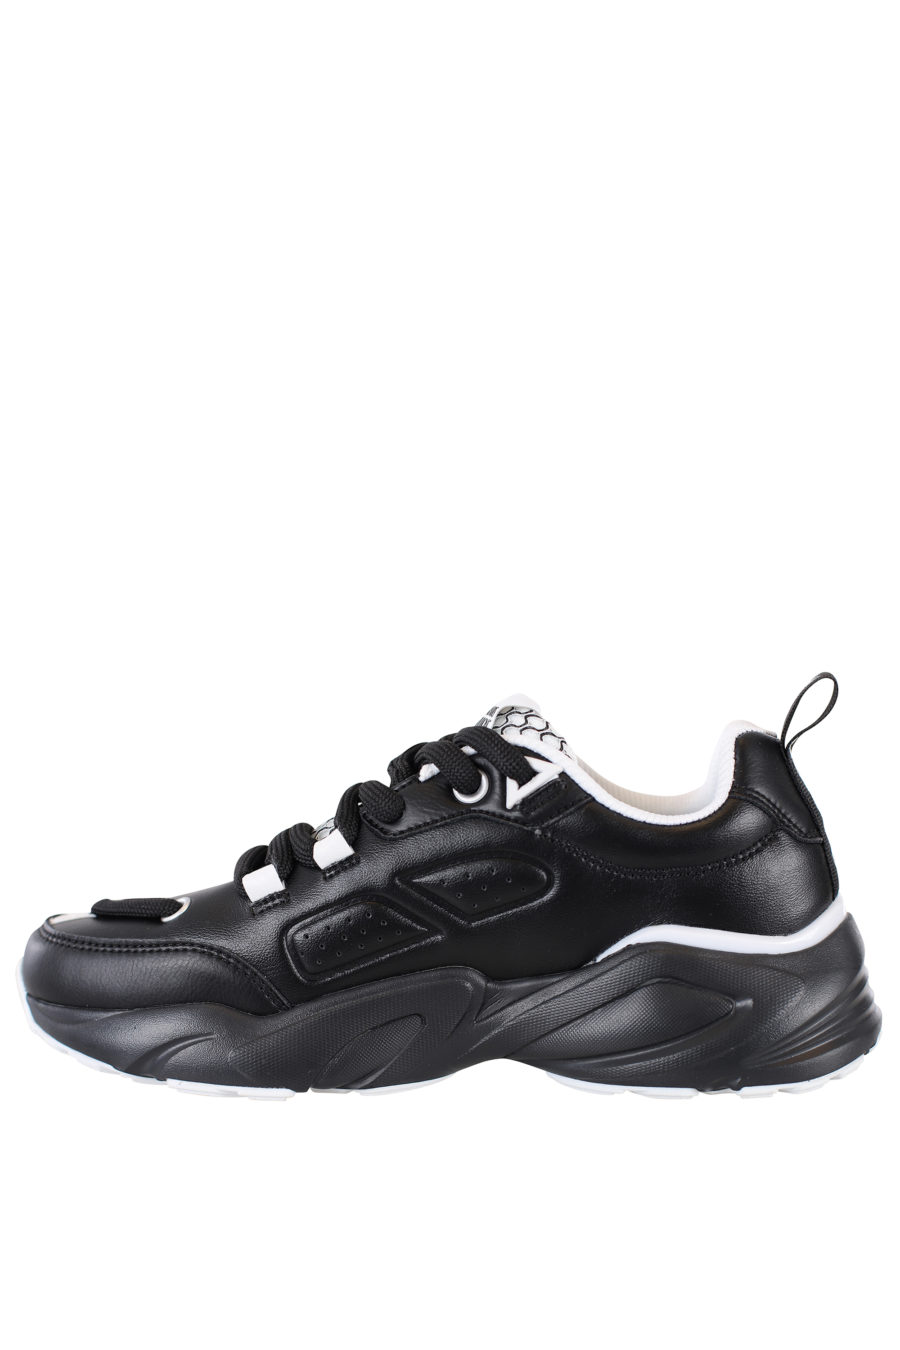 Zapatillas negras con detalles blancos "Wave" - IMG 2182